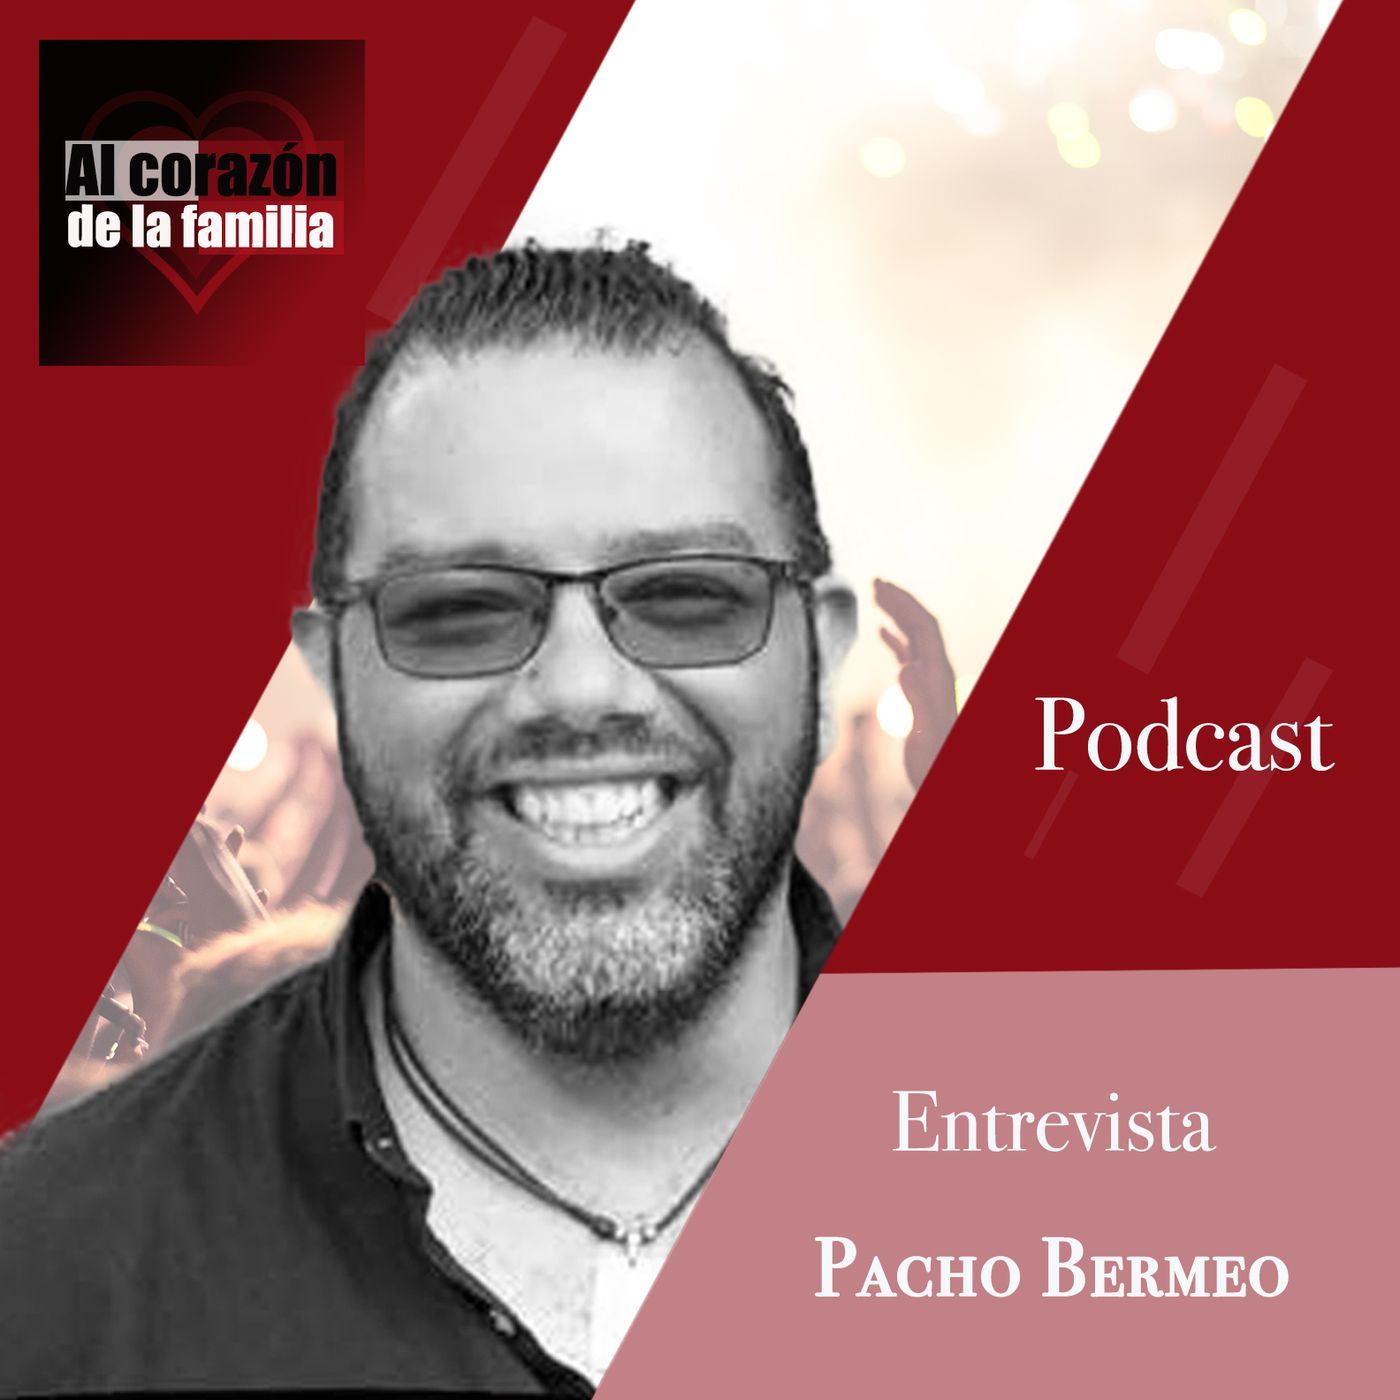 Entrevista Pacho Bermeo